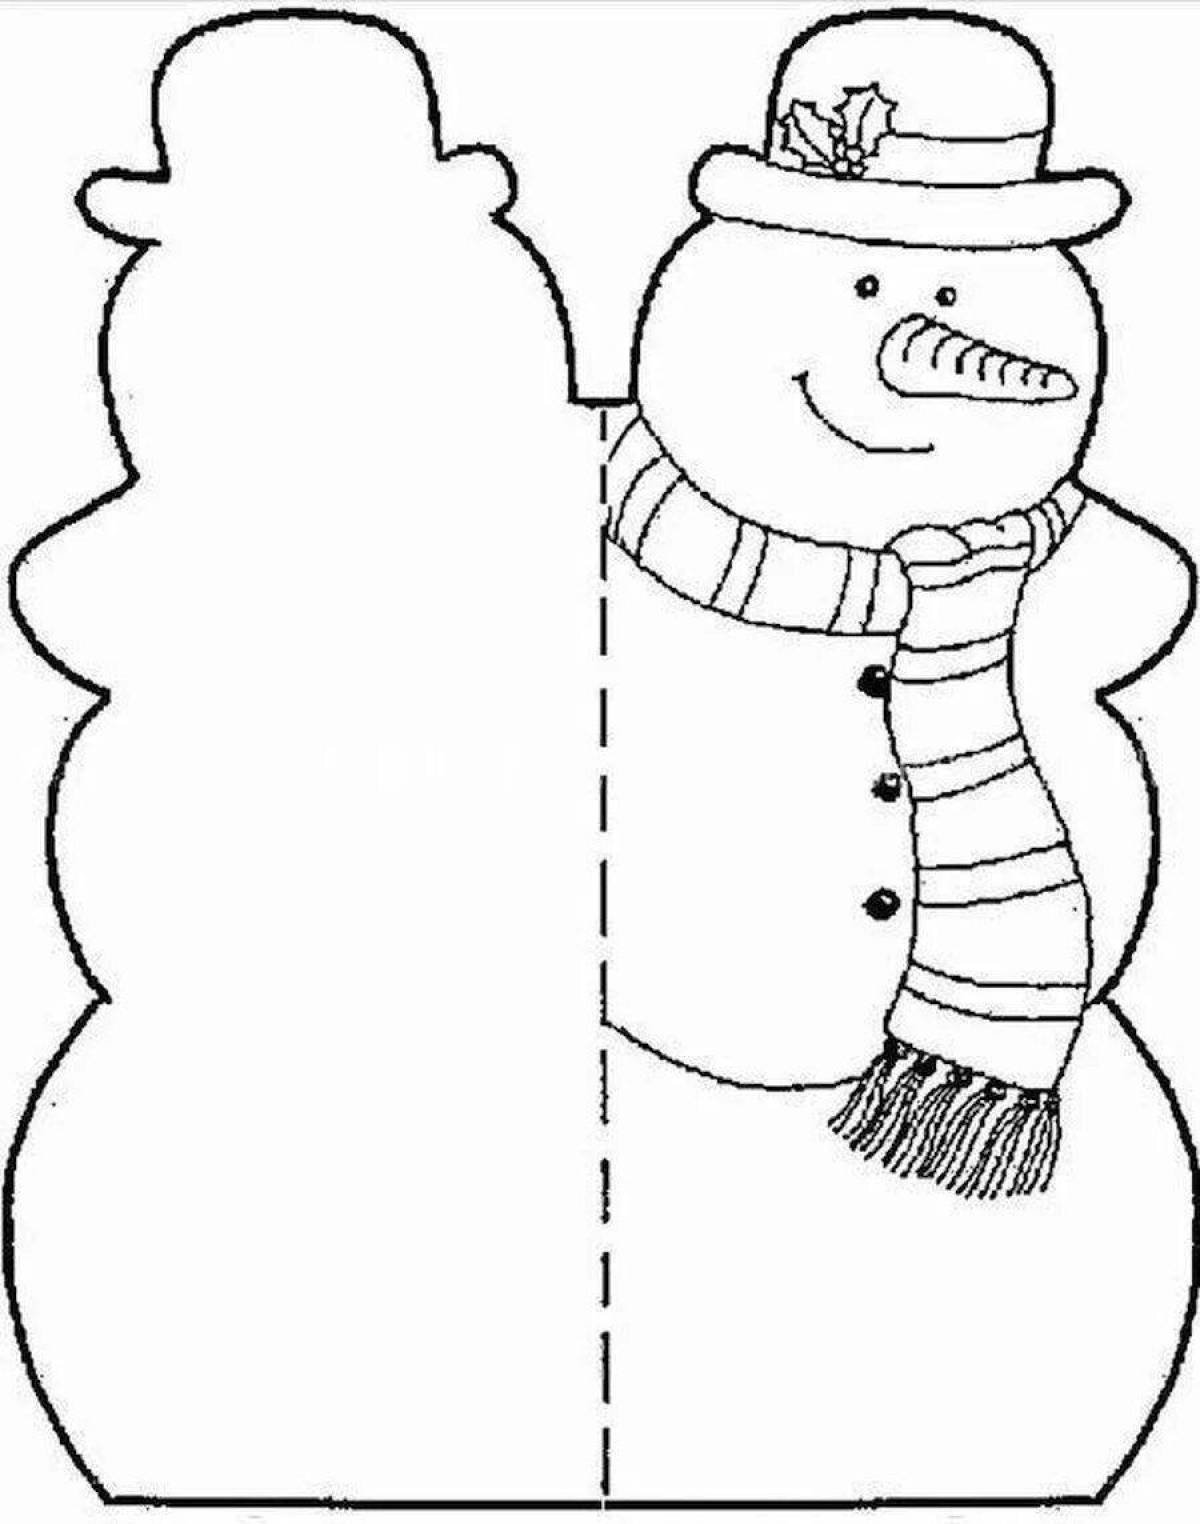 Открытки своими руками шаблоны для детей. Снеговик для вырезания. Аппликации "Снеговик". Снеговик раскраска. Шаблоны для поделок на новый год.